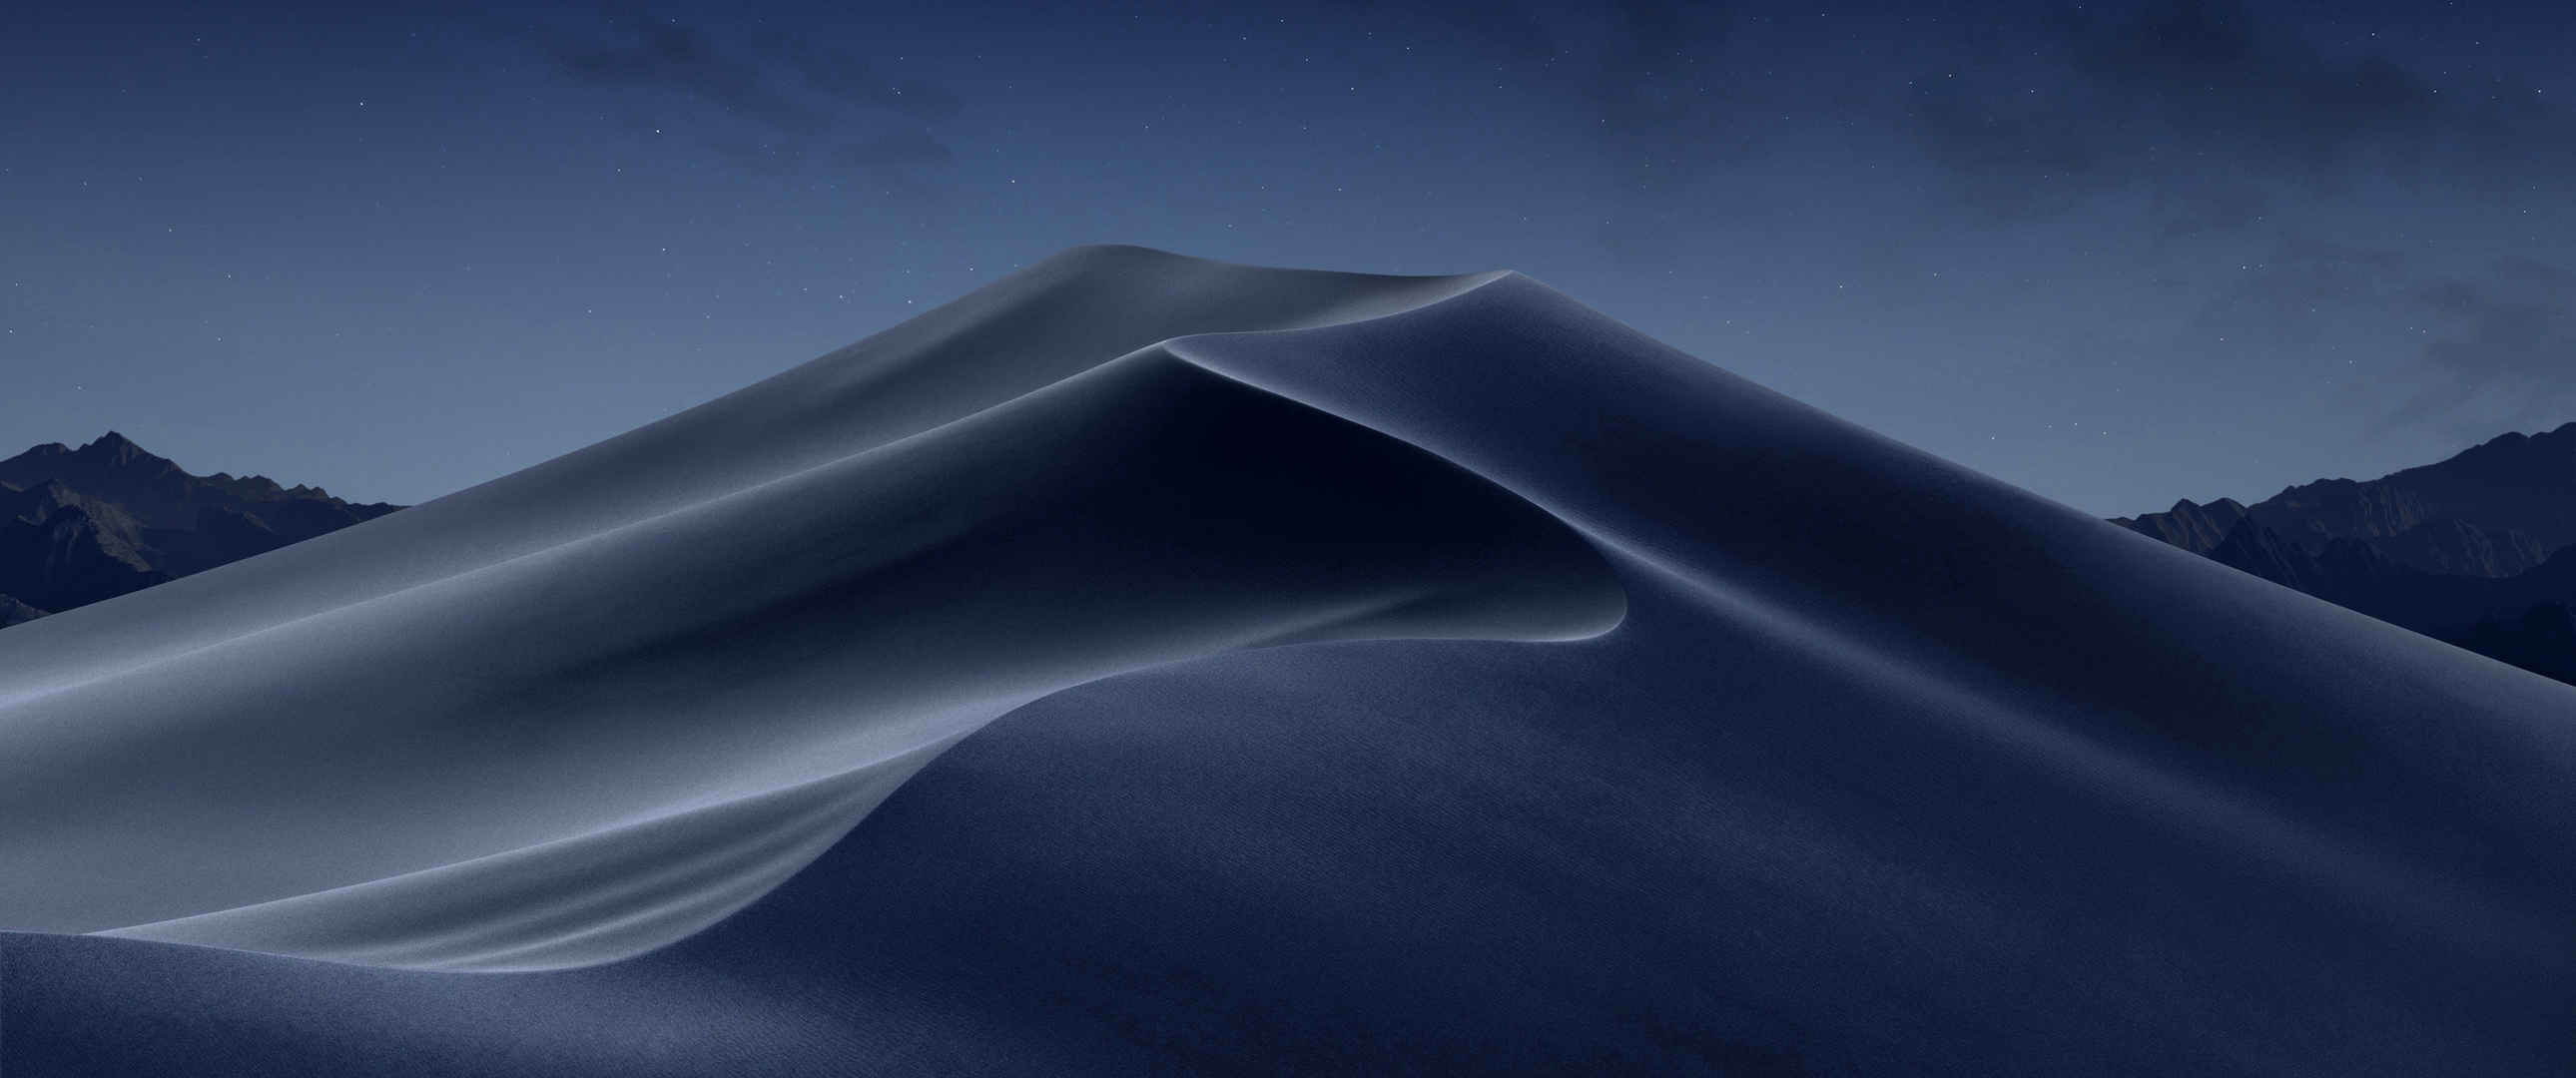 苹果MacOS Mojave 莫哈韦沙漠 夜间风景3440x1440壁纸